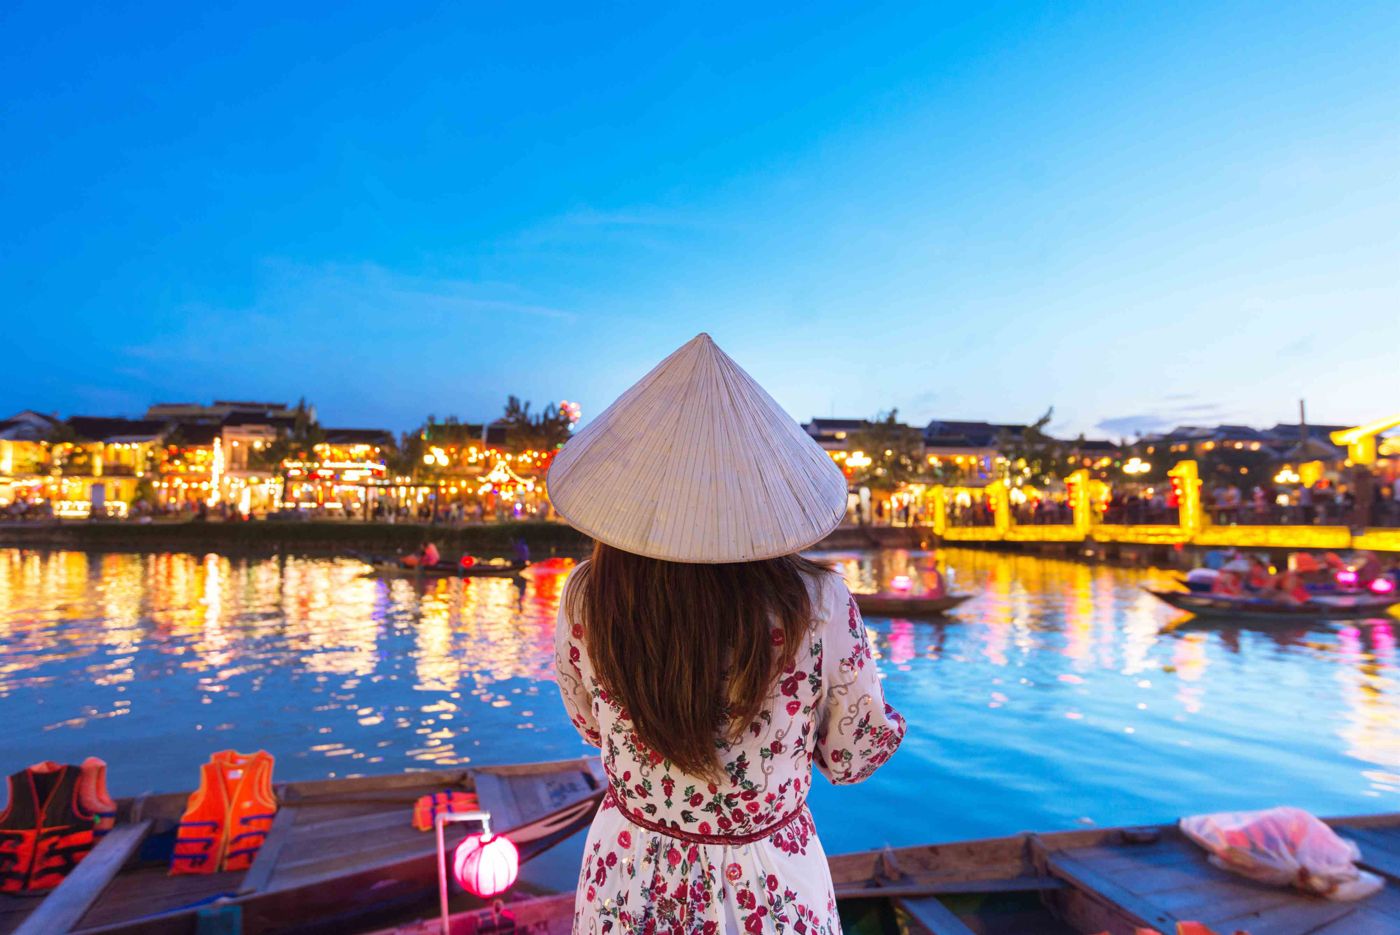 Take a short trip in Hoi An, Vietnam